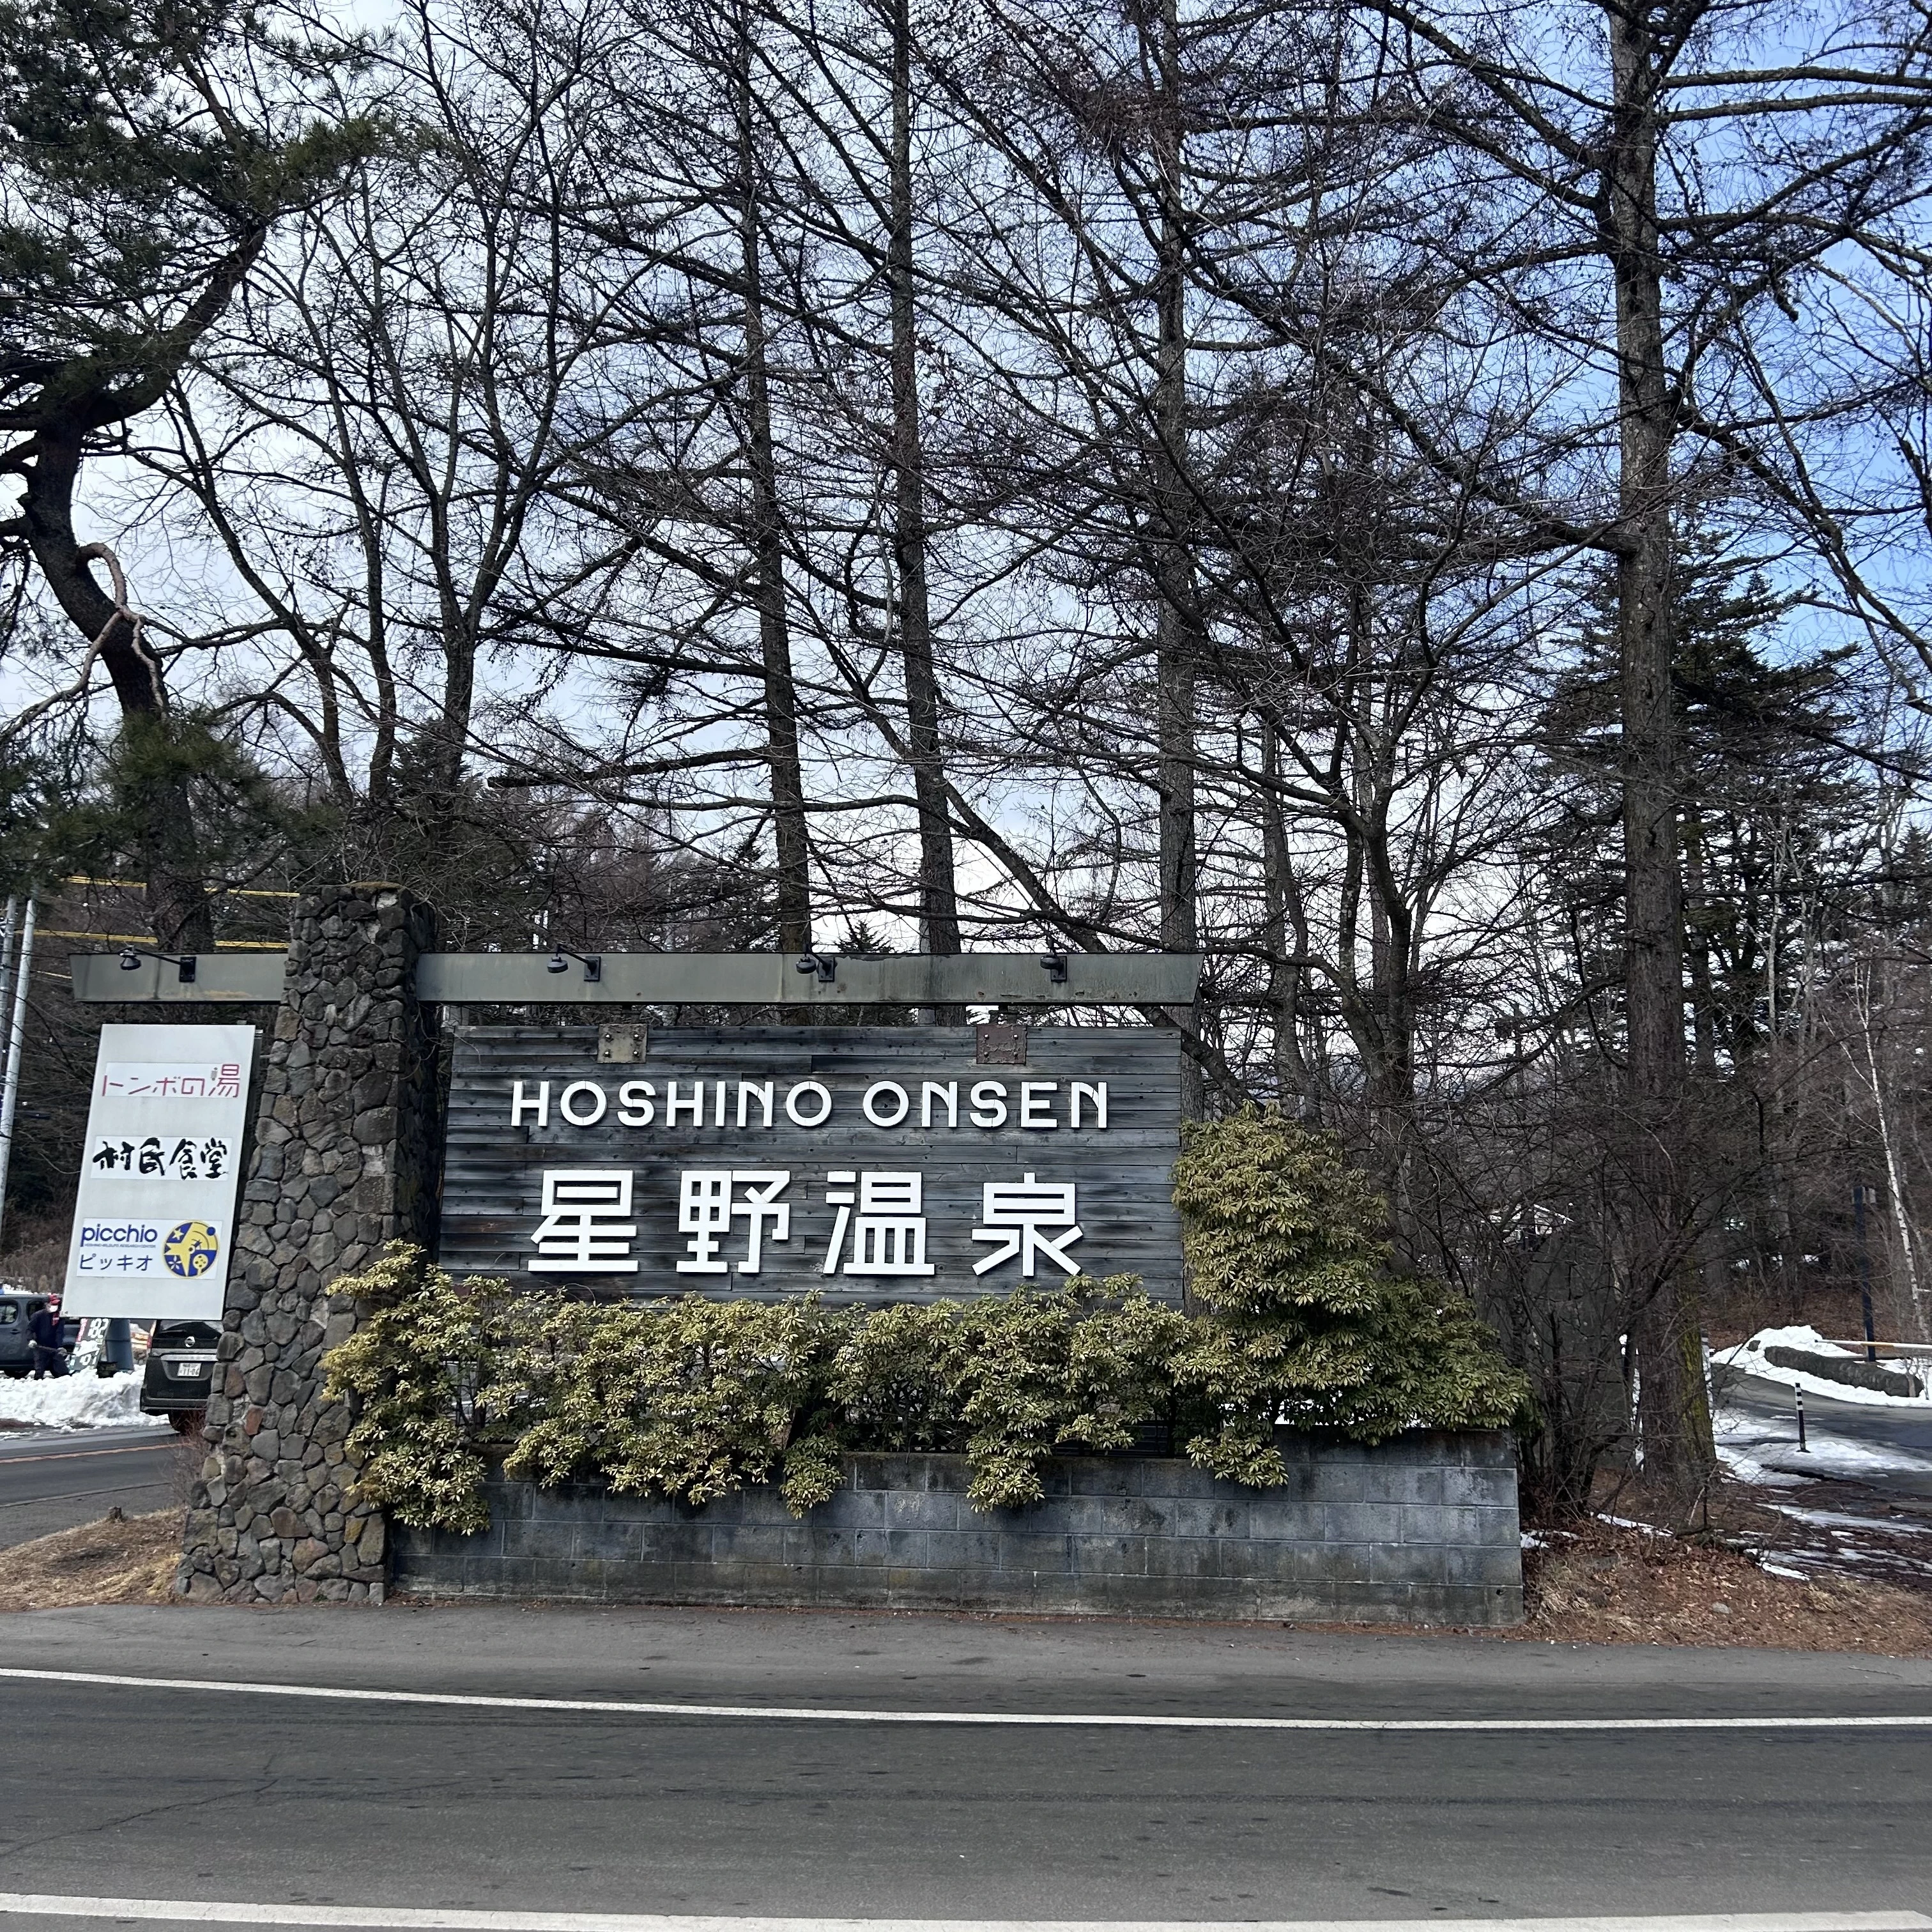 軽井沢星野エリア、軽井沢観光、冬旅行